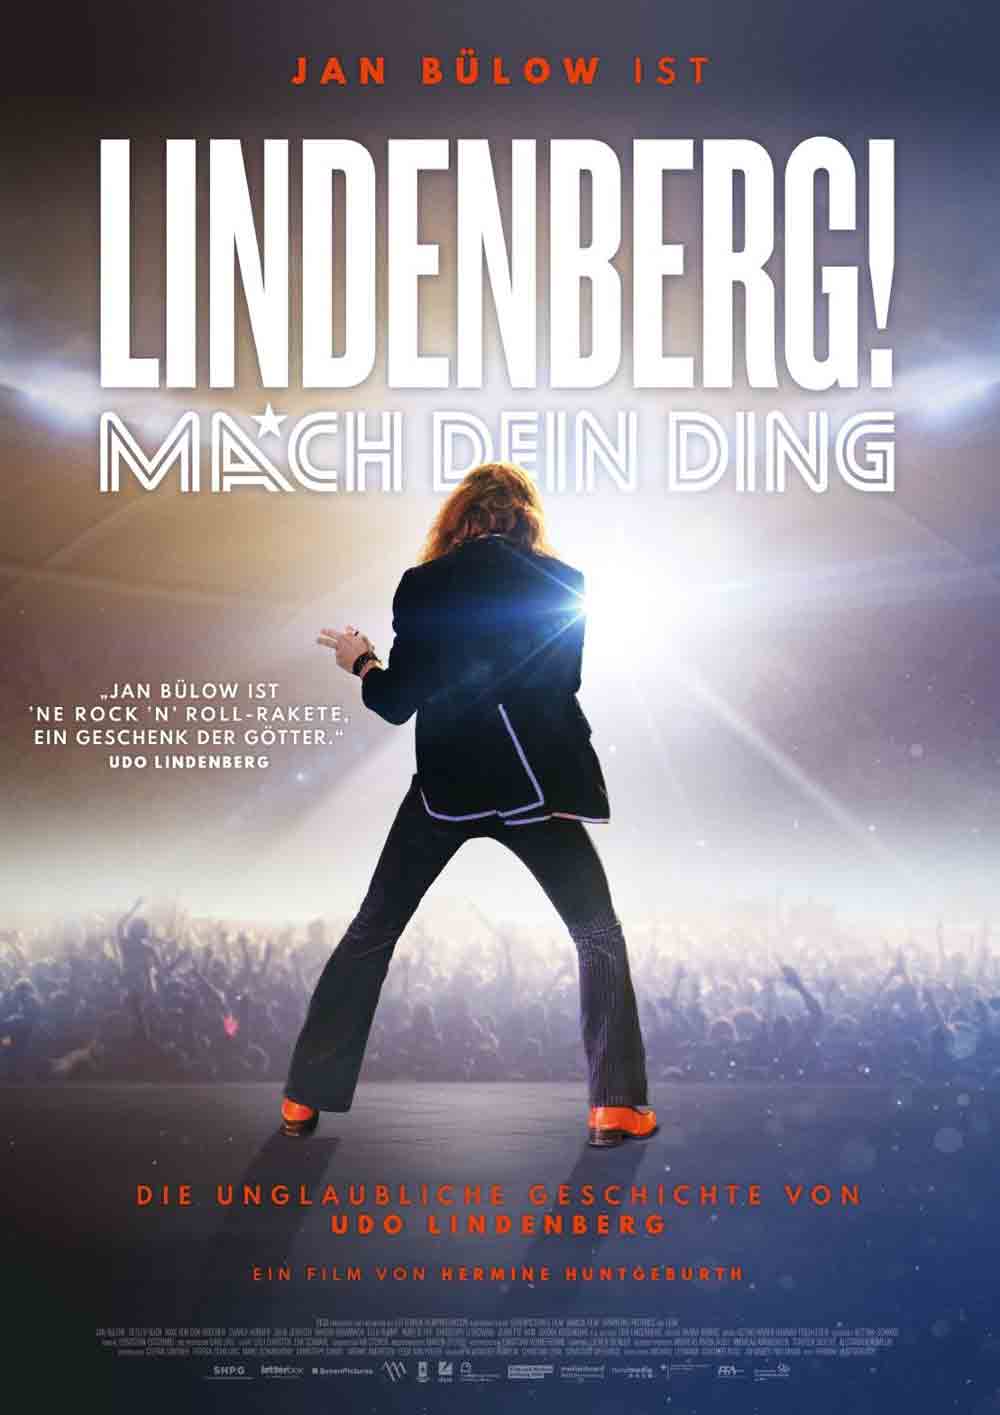 Rietberg: Ersatztermin für »Lindenberg!«, technische Probleme, Film wird am 7. Dezember 2021 gezeigt